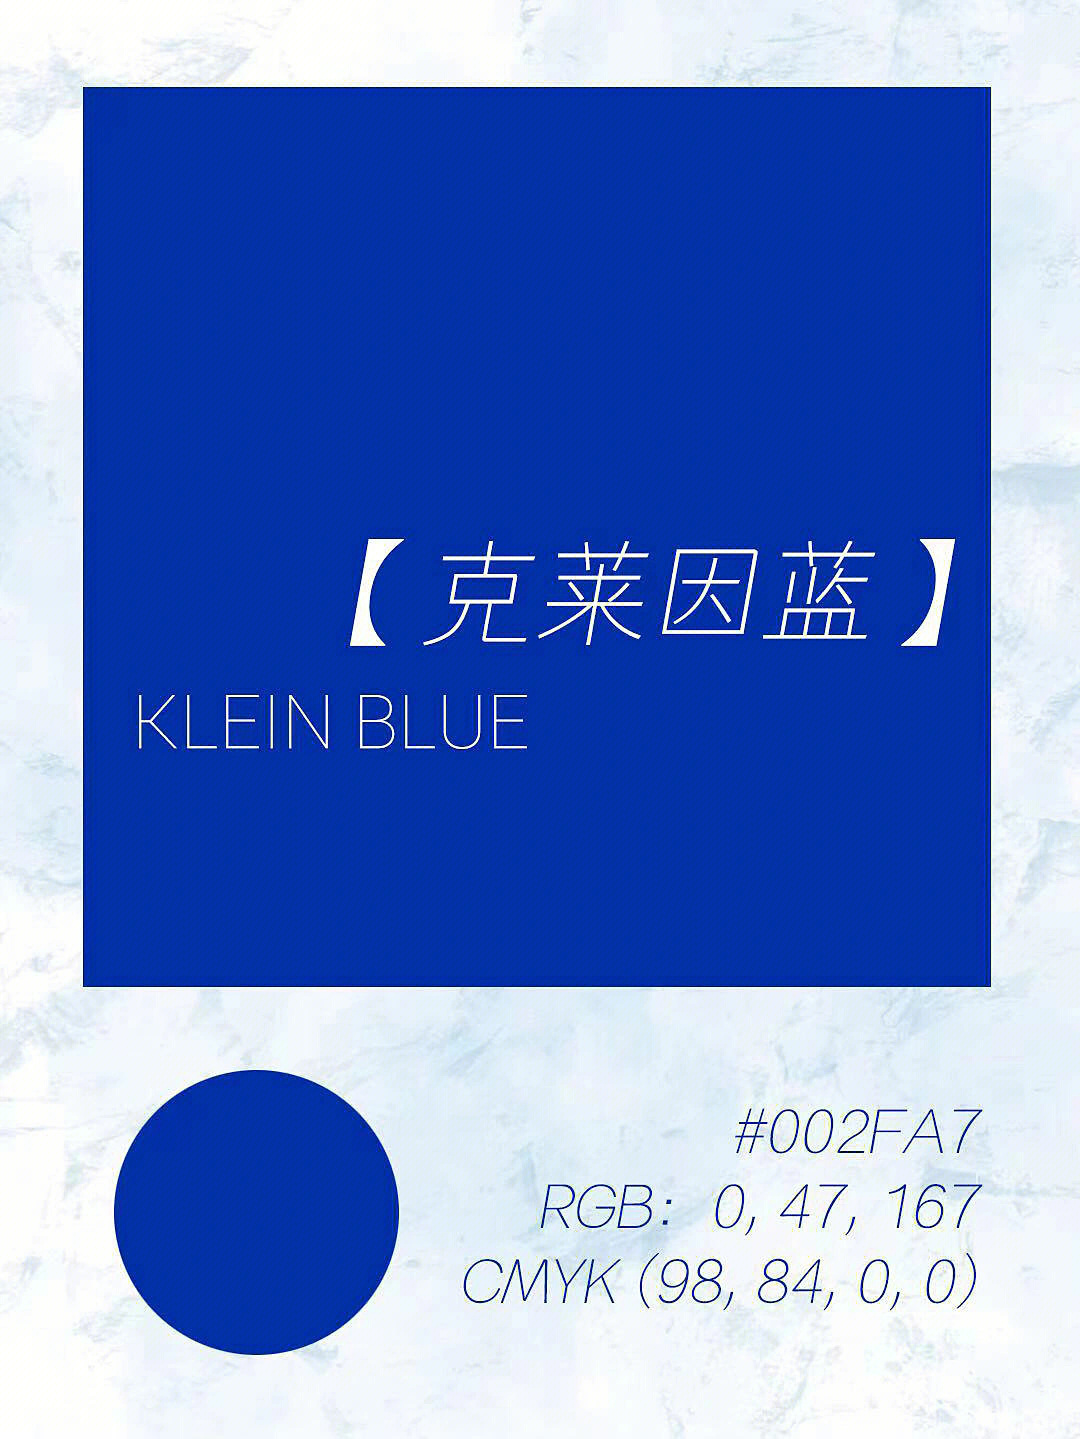 蓝色与治愈充满关联,克莱因蓝是最纯净的颜色,把它和肖像设计创意